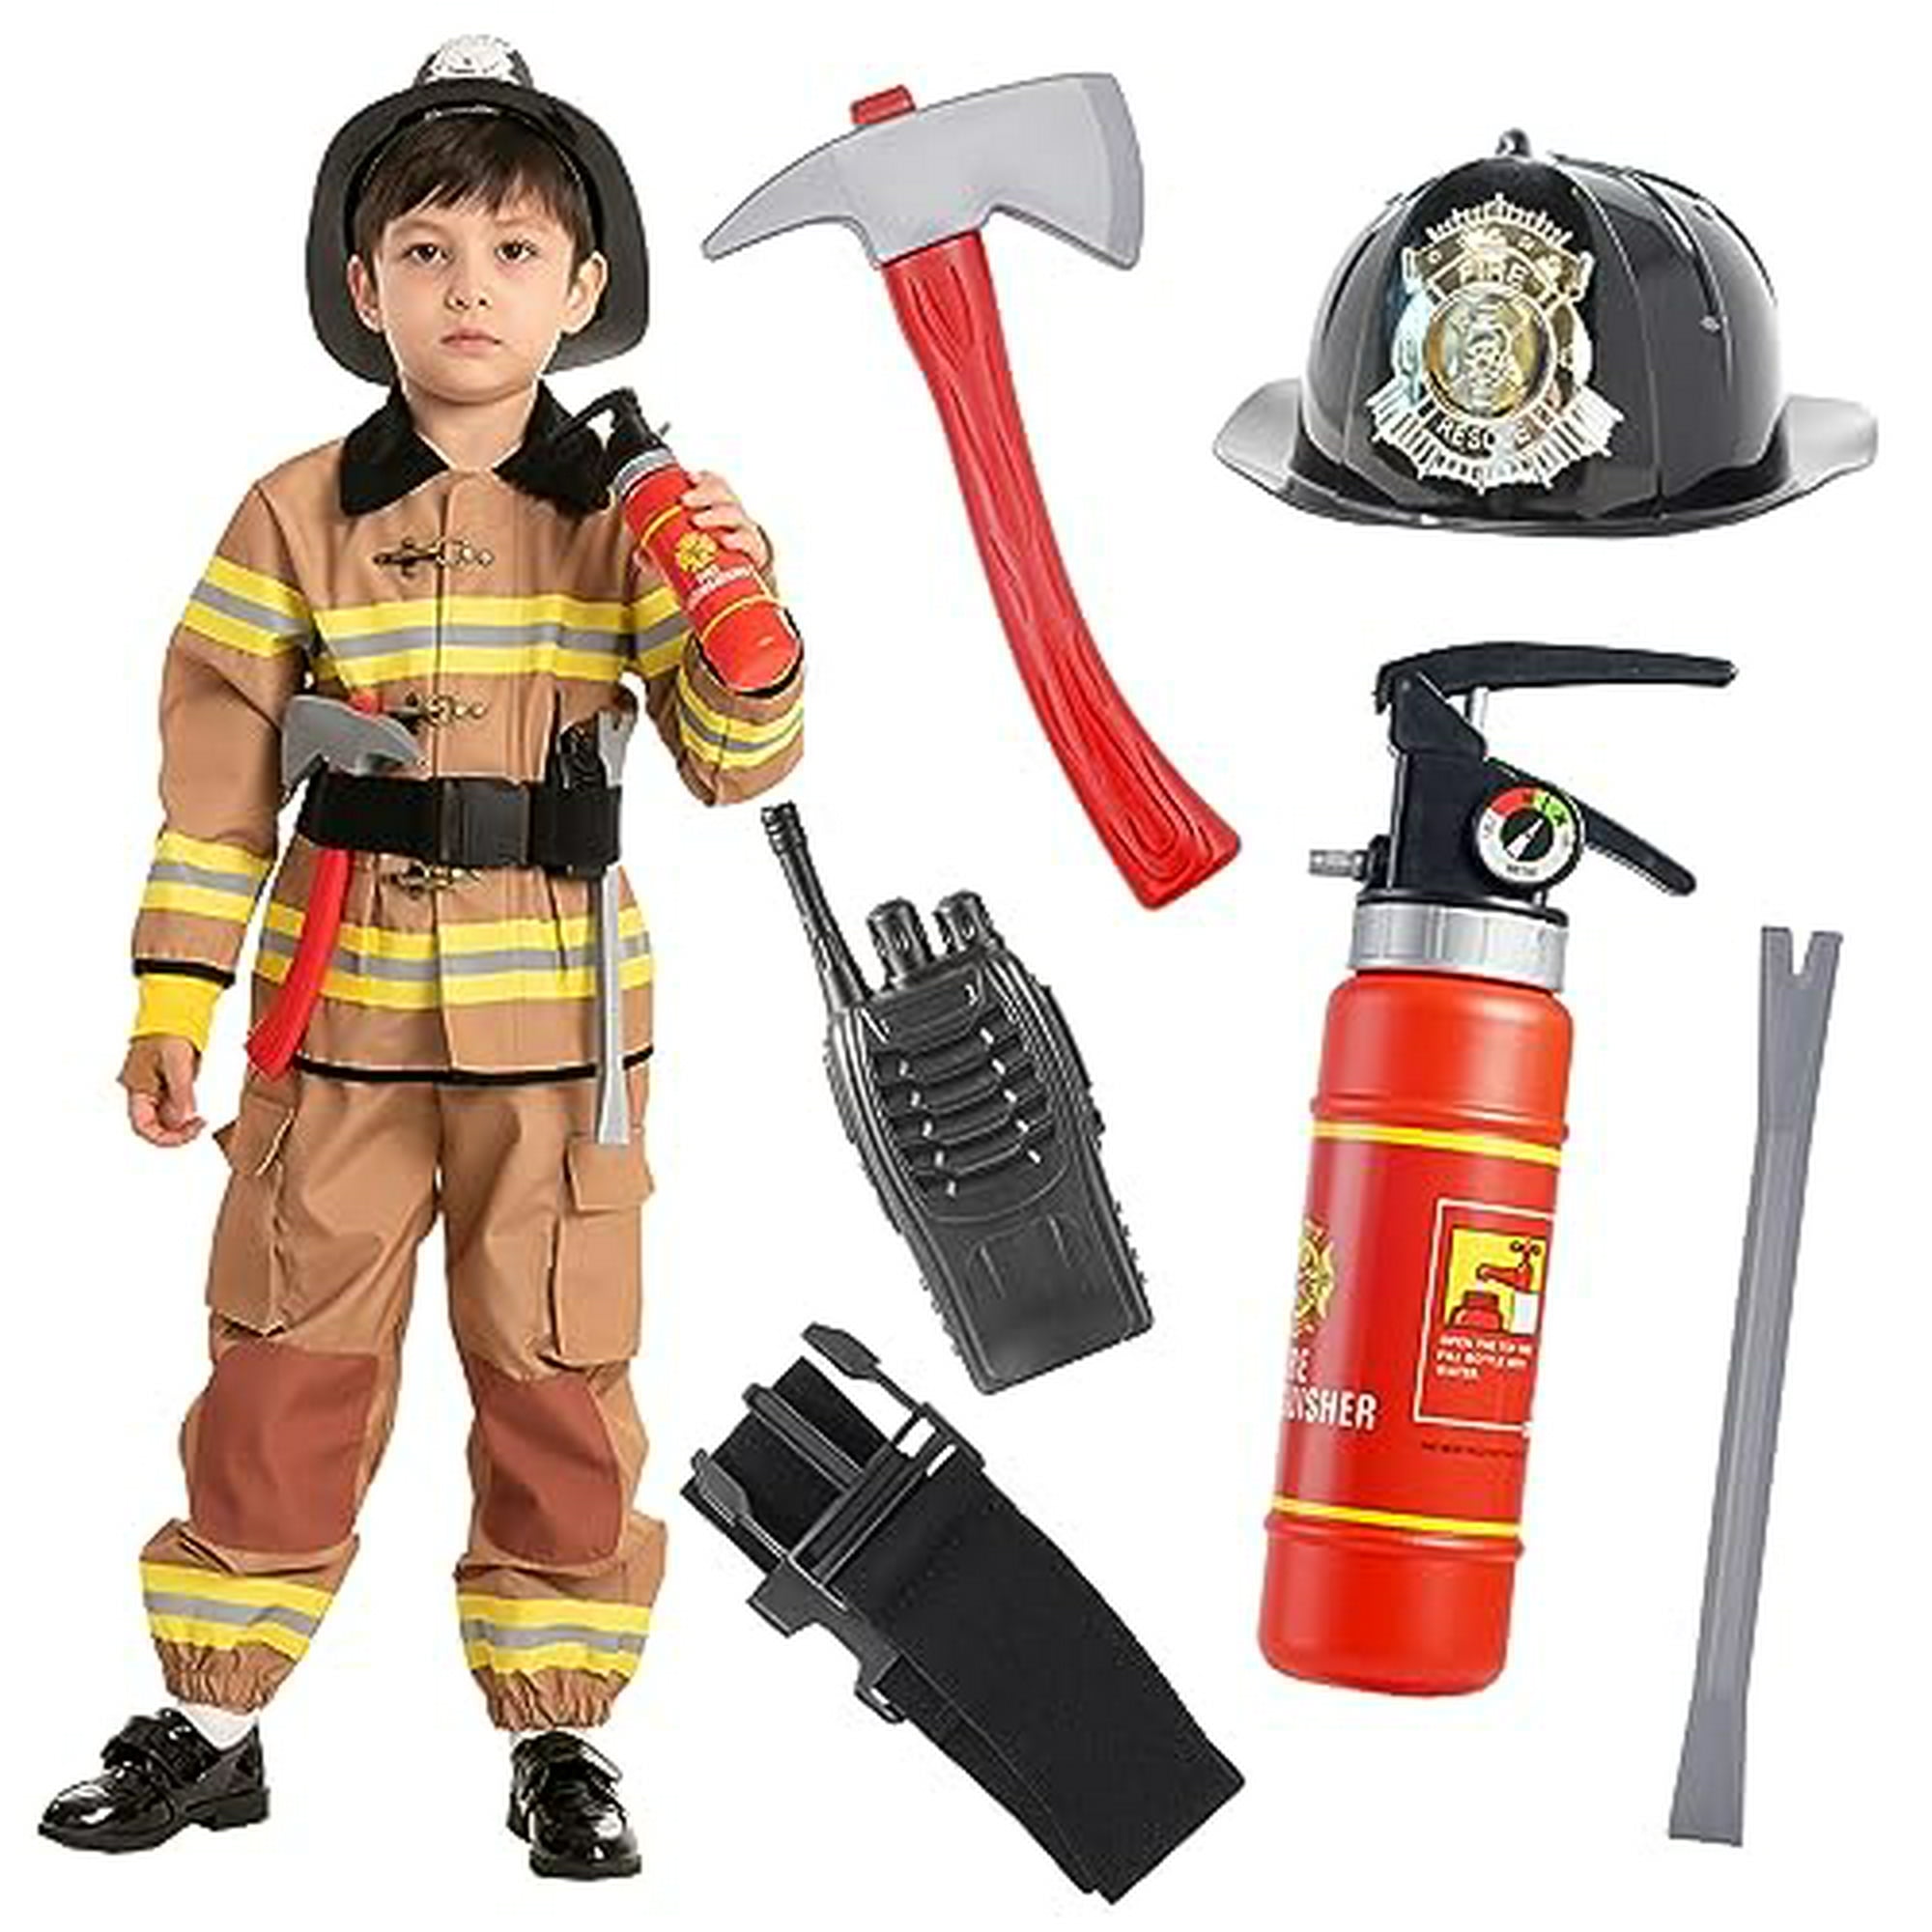 Disfraz de bombero  Disfraz de bombero, Decoración de bomberos,  Manualidades